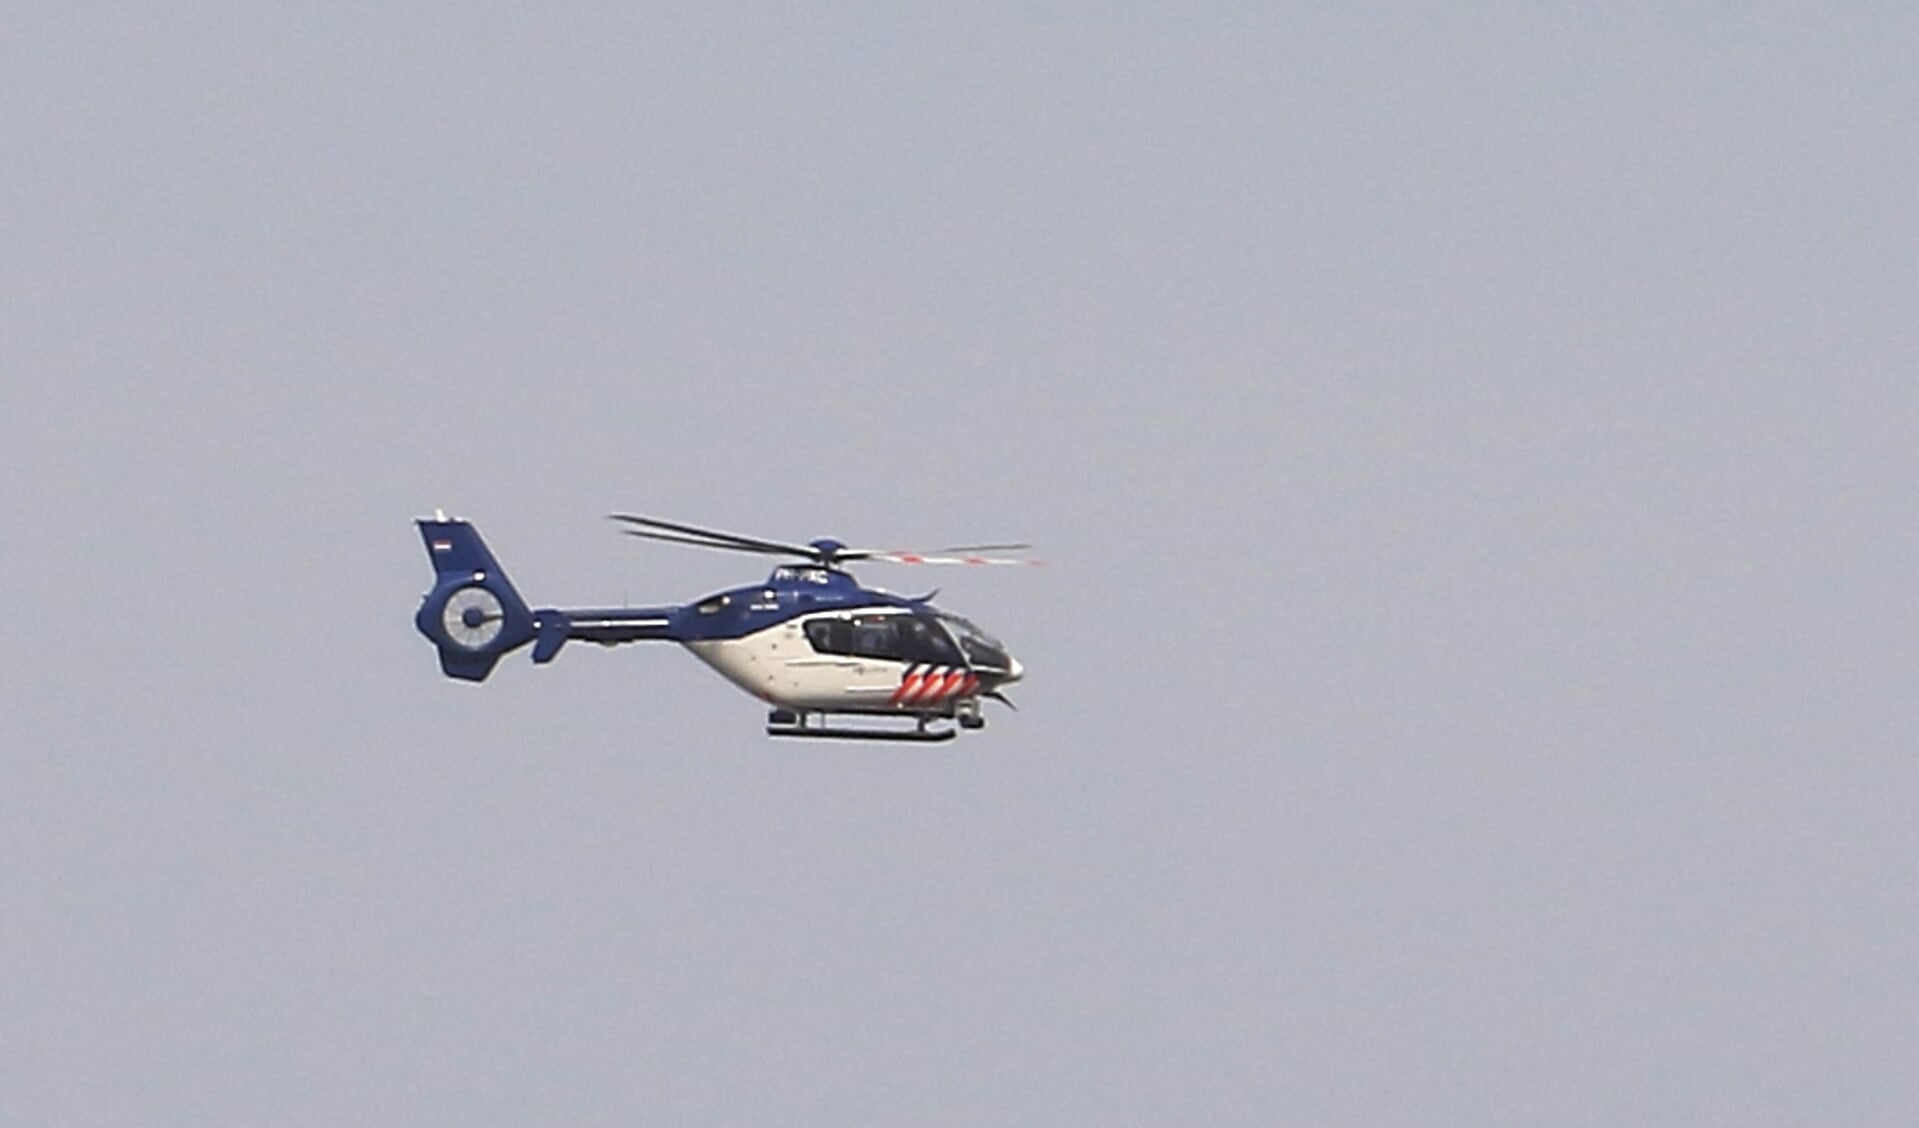 Foto ter illustratie, dit is niet de helicopter die momenteel boven Breda vliegt